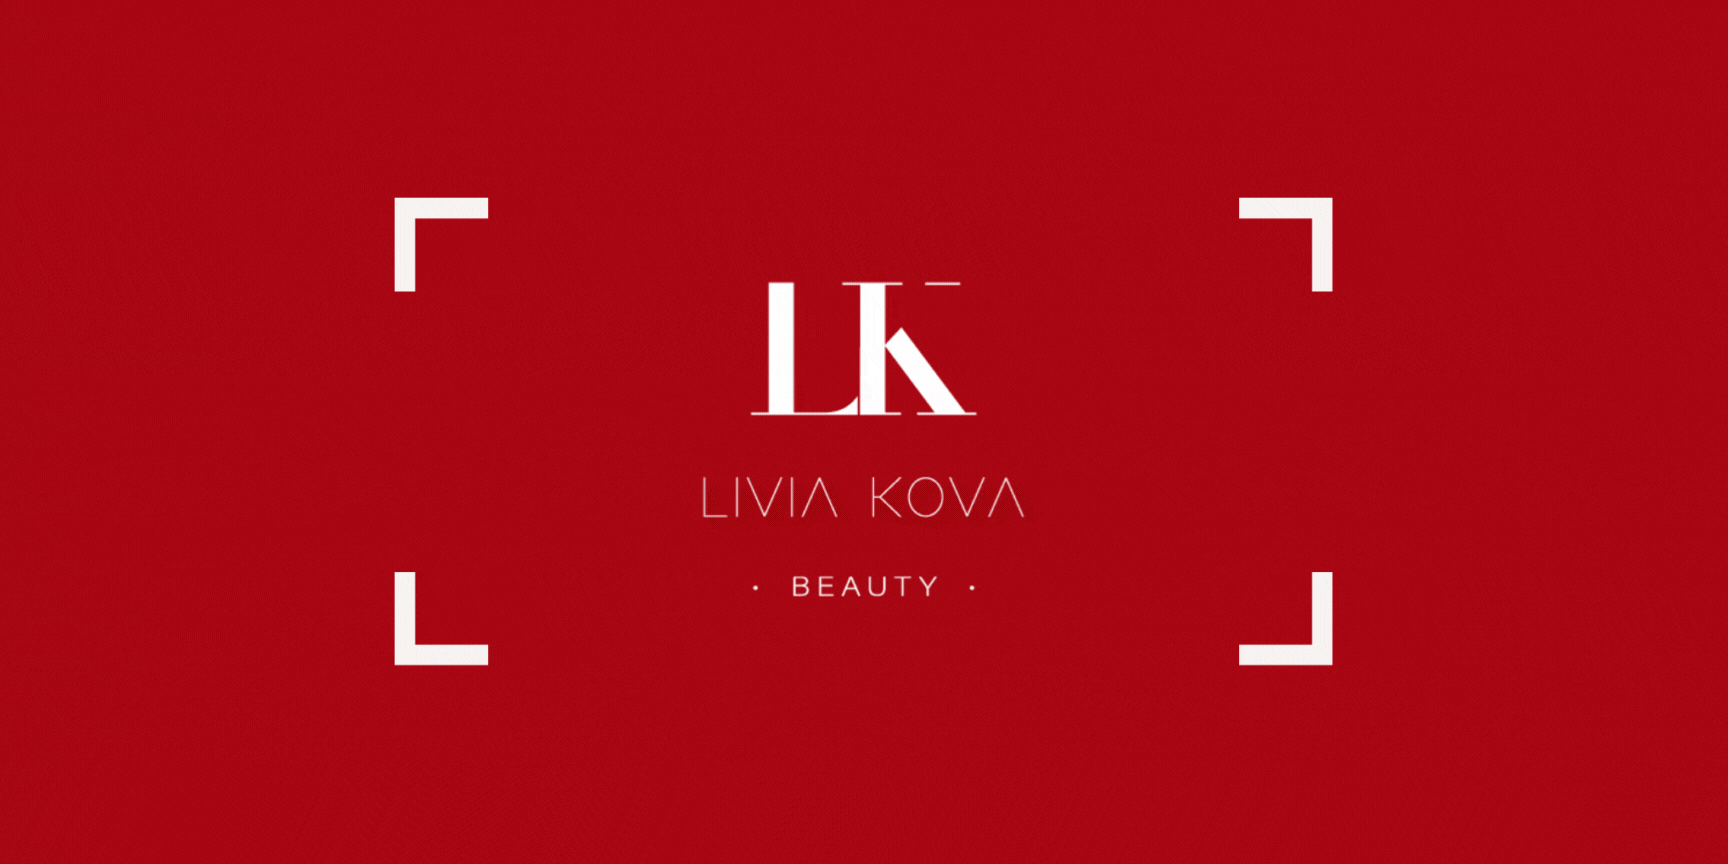 Livia Kova - Beauty Institute in Brussels